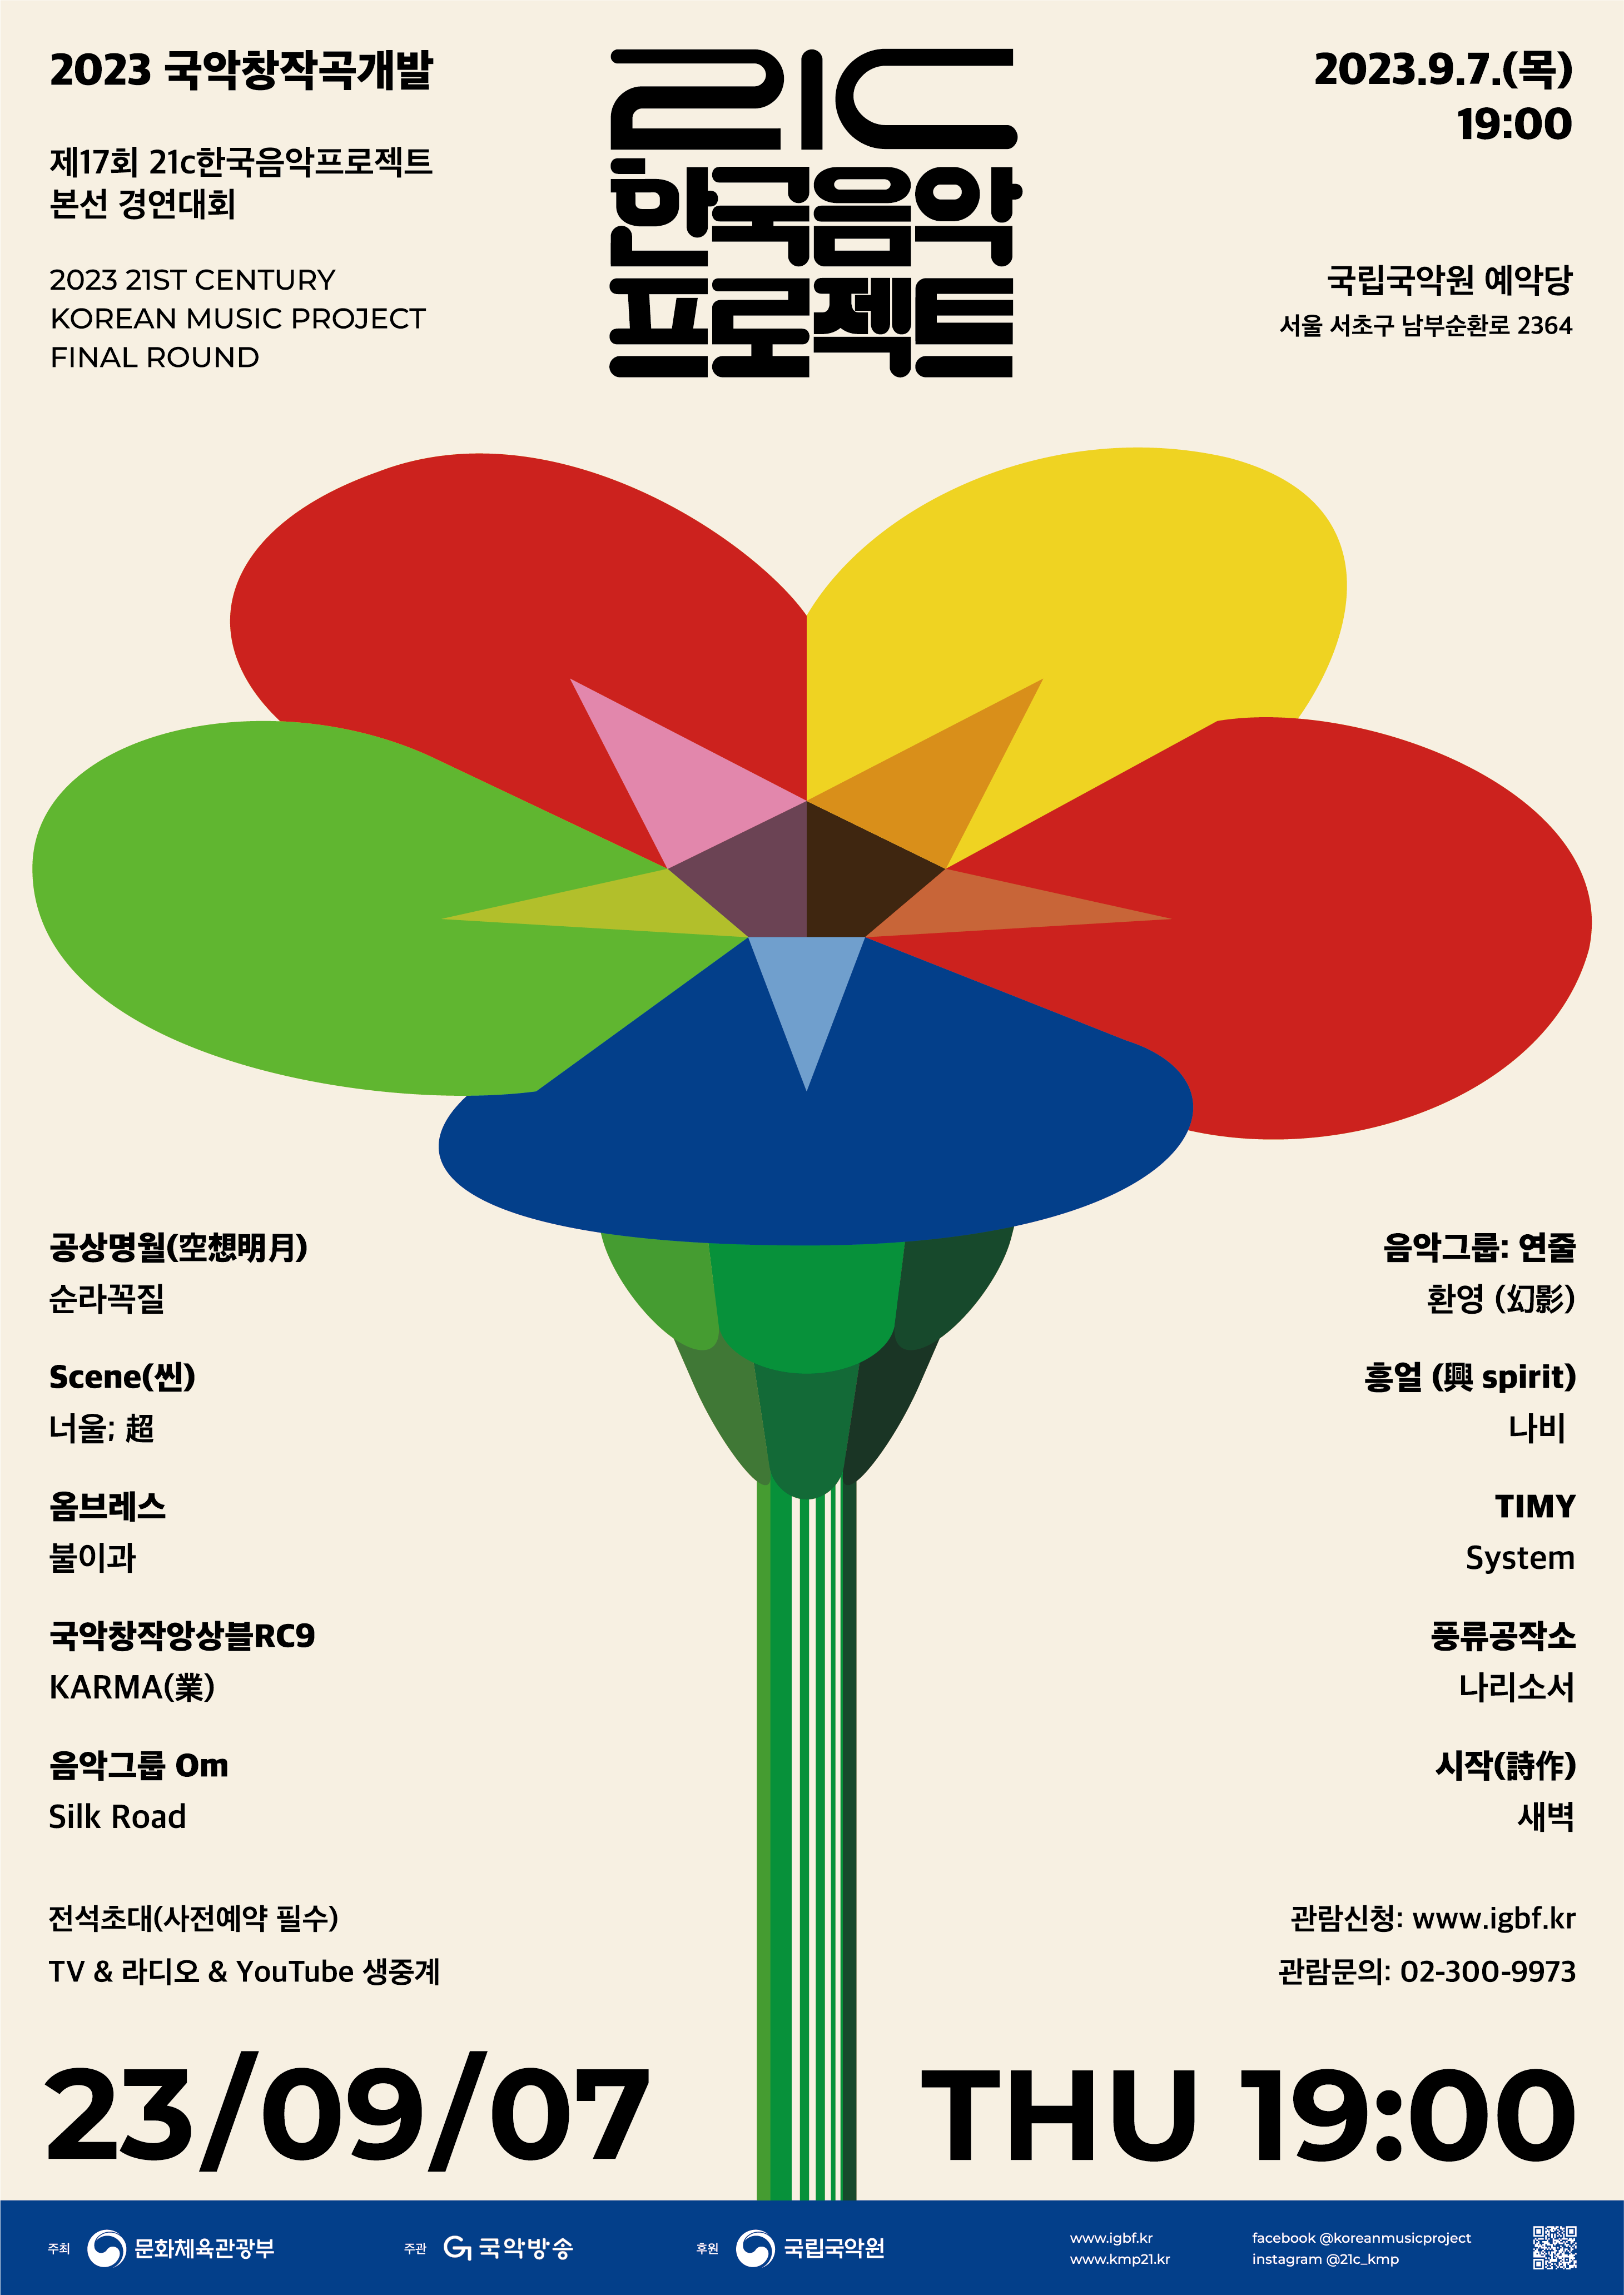 2023년도 21C 한국음악프로젝트 포스터